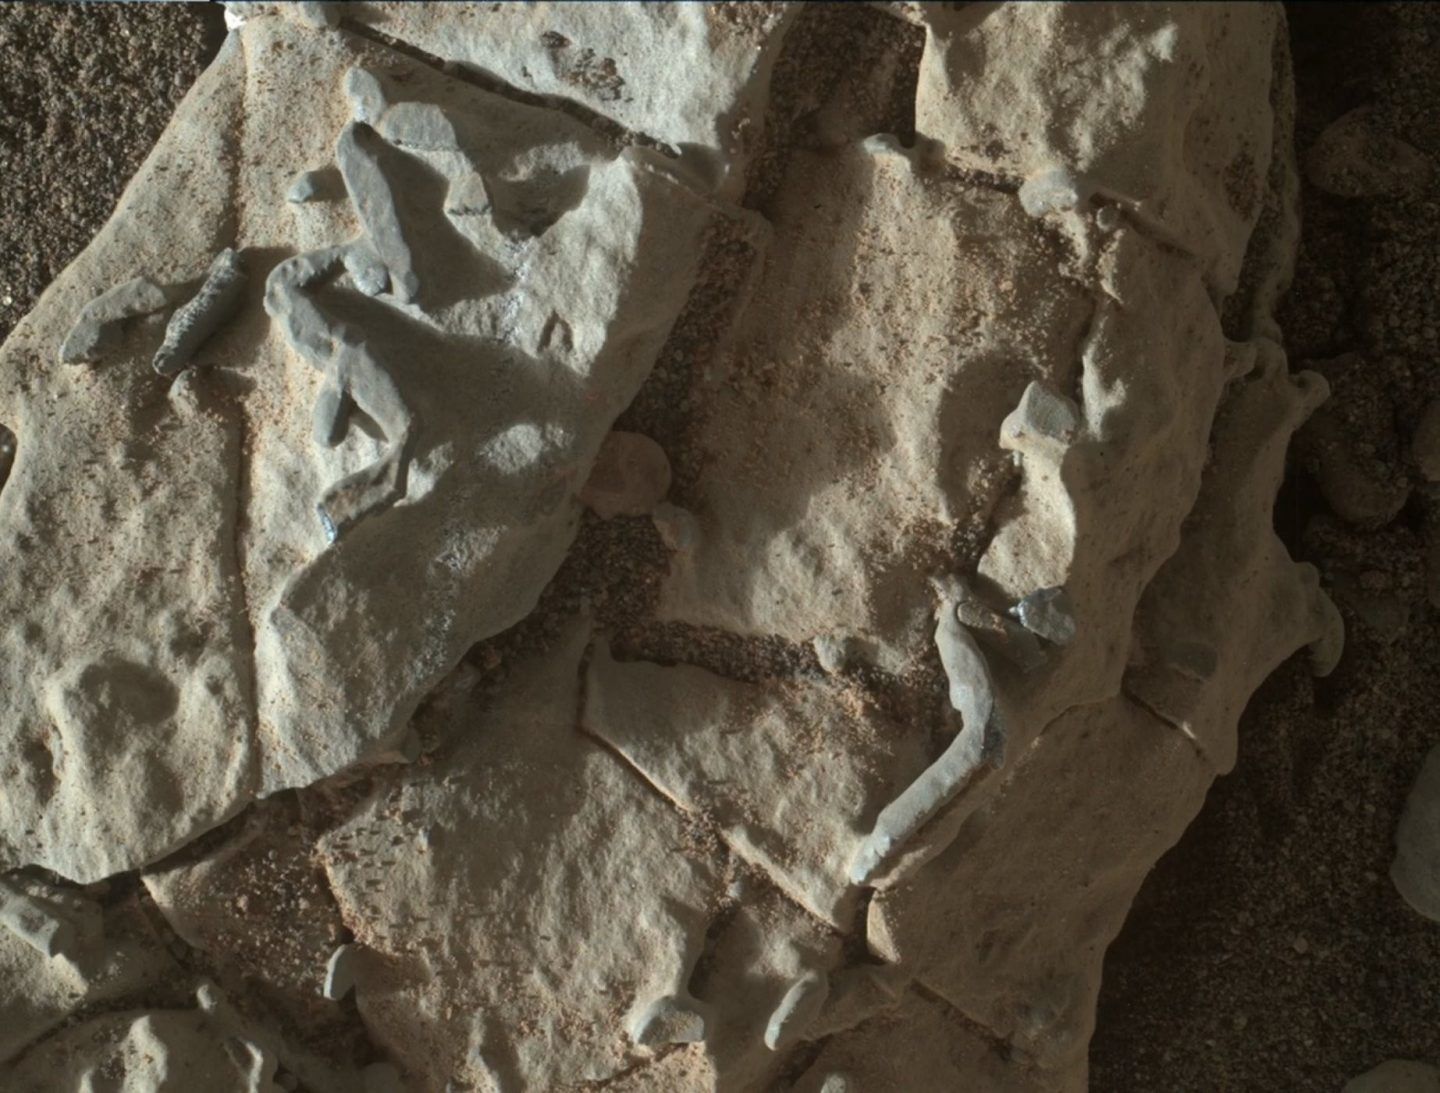 المركبة كيوريوسيتي ترصد أنابيب غريية على المريخ